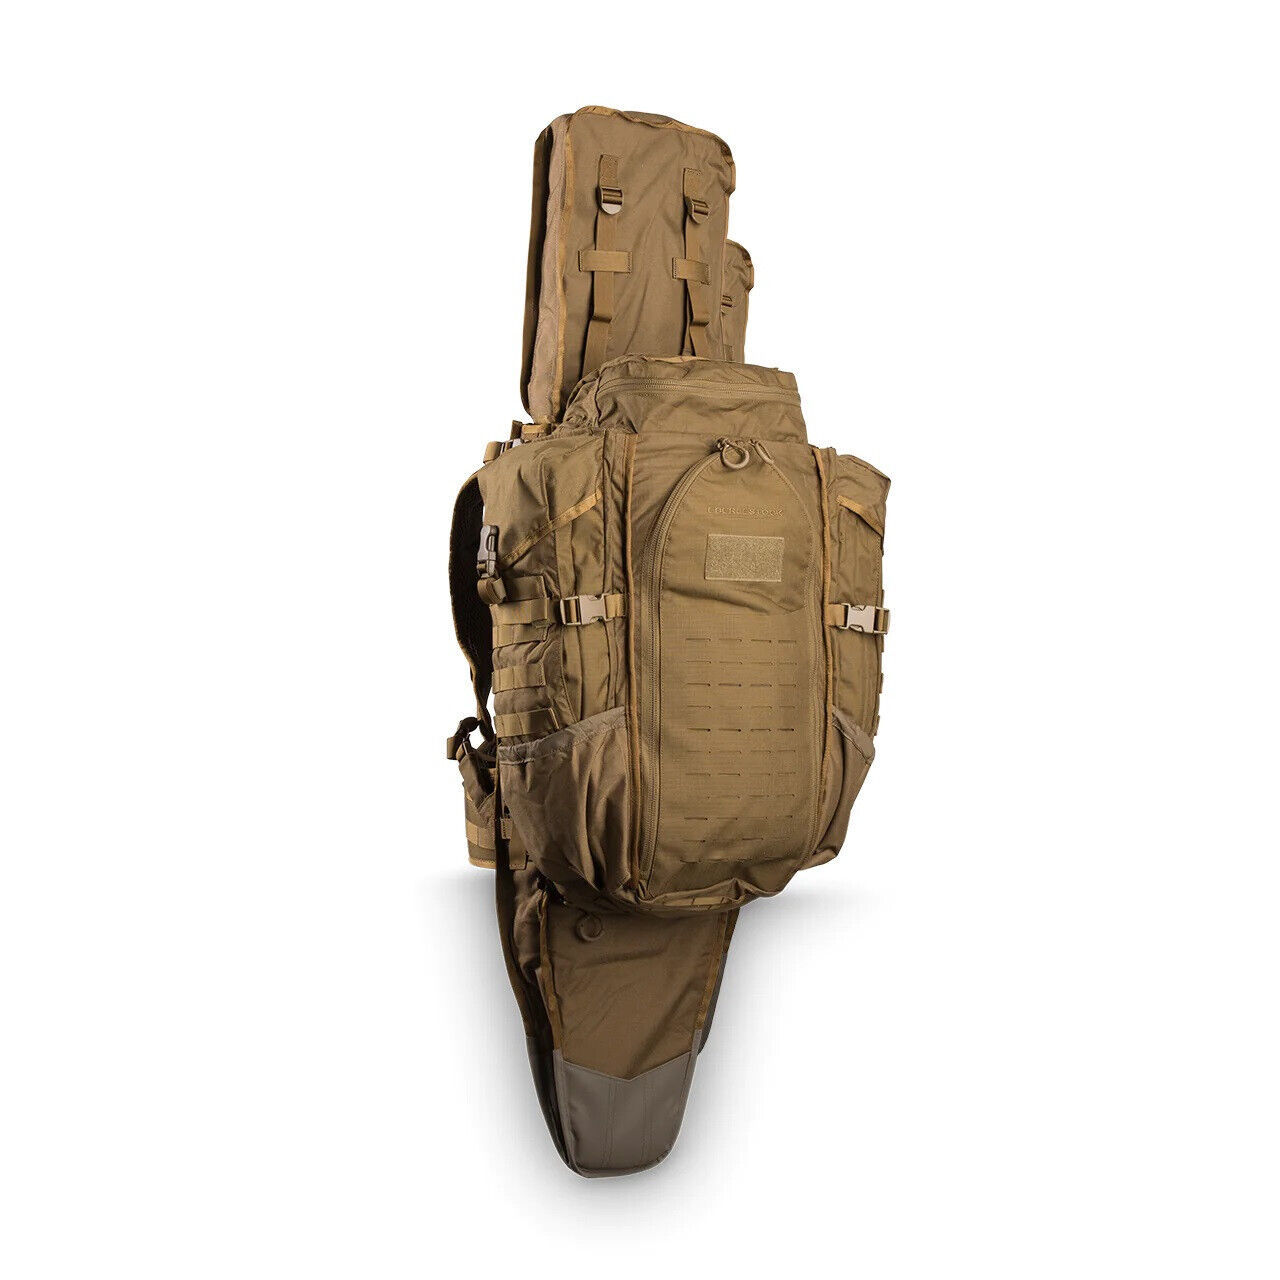 Eberlestock G3 Phantom Outdoor Army Backpack Molle Pack Coyote